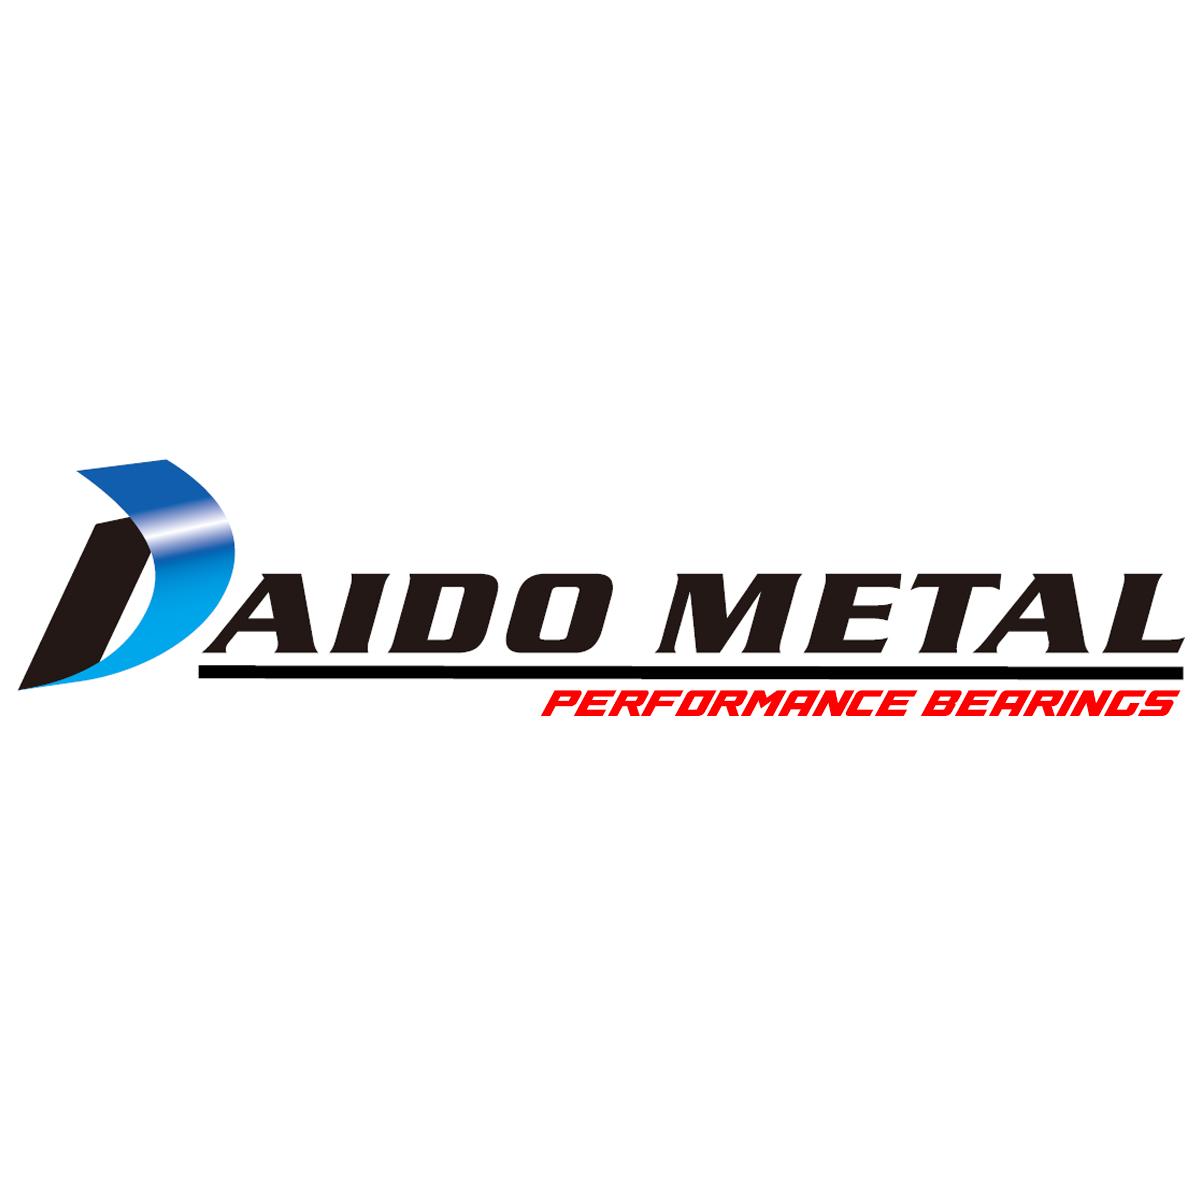 Daido Metal Performance Bearings